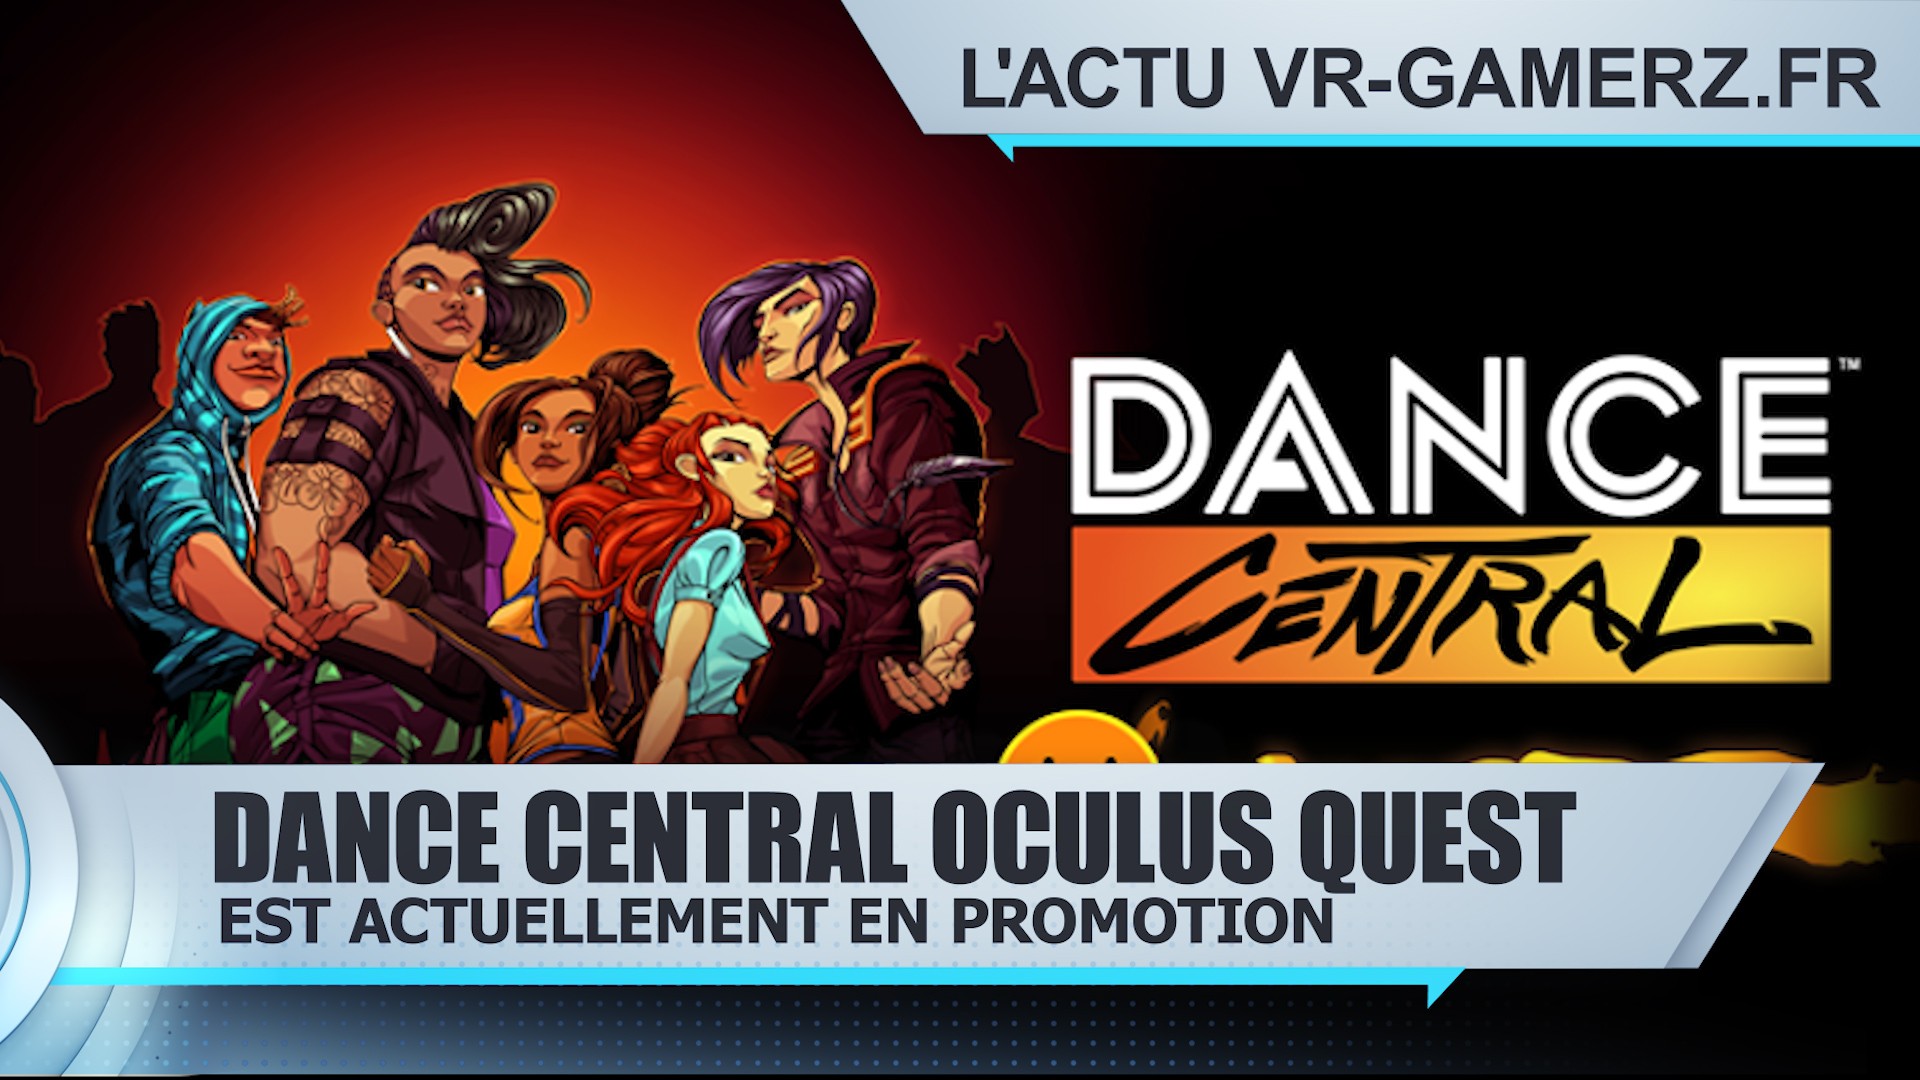 Dance Central Oculus quest en promotion pendant quelques heures.